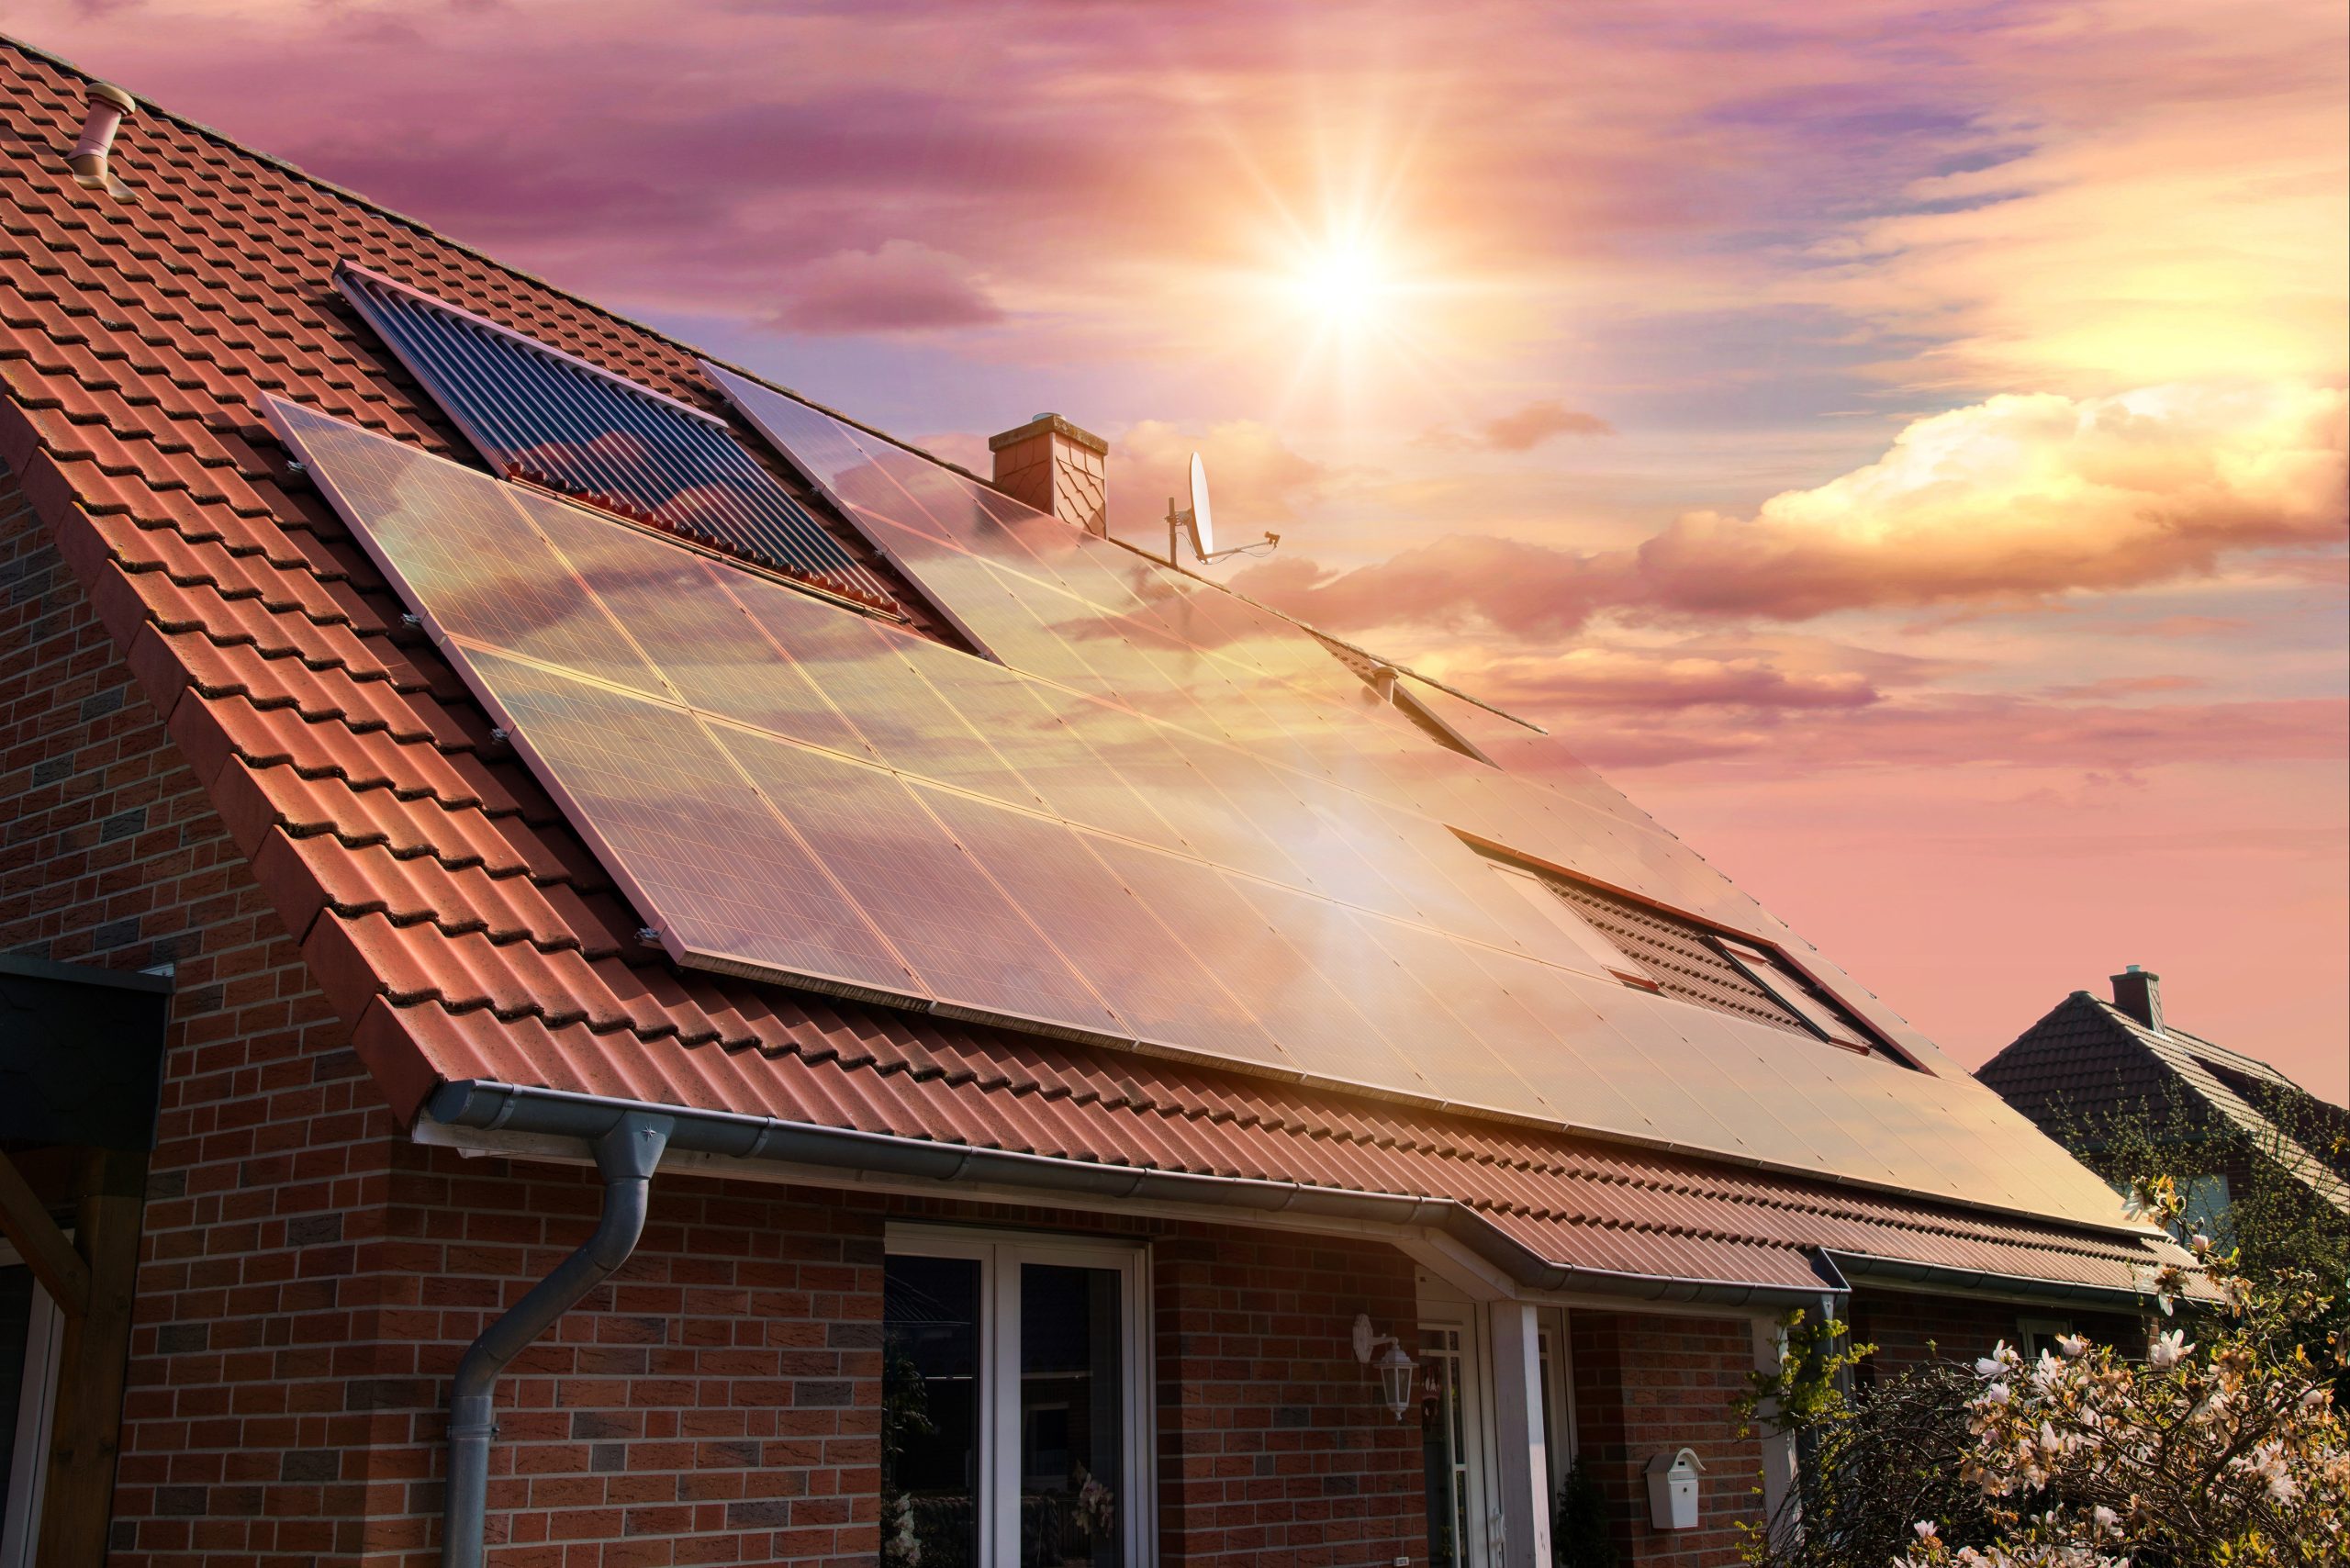 Fotovoltaico: celle solari organiche a base di legno, durevoli e economiche